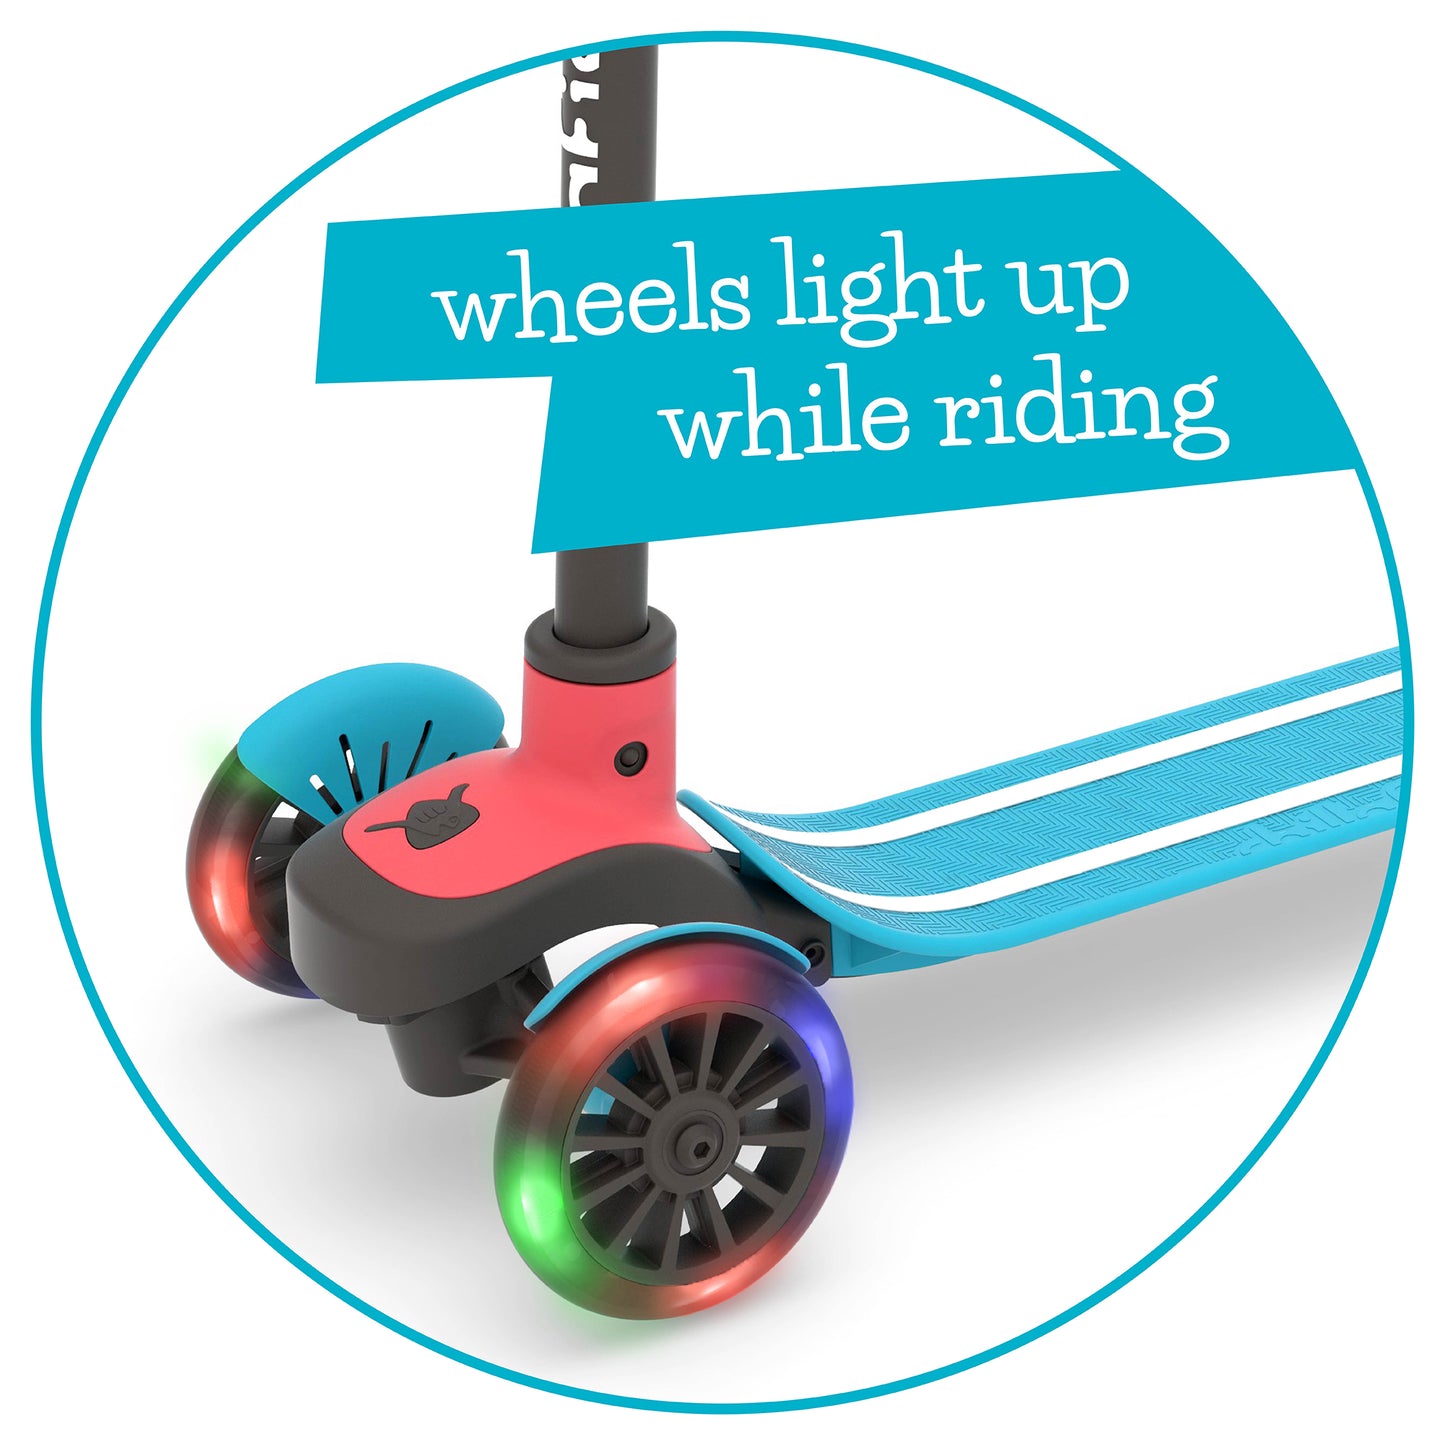 Scotti 3-Rad leicht lenkender Tretroller mit Twintip Antirutschdeck, integrierter Bremse und Leuchträdern,einstellbare Höhe für alle Kinder ab 3 Jahren.